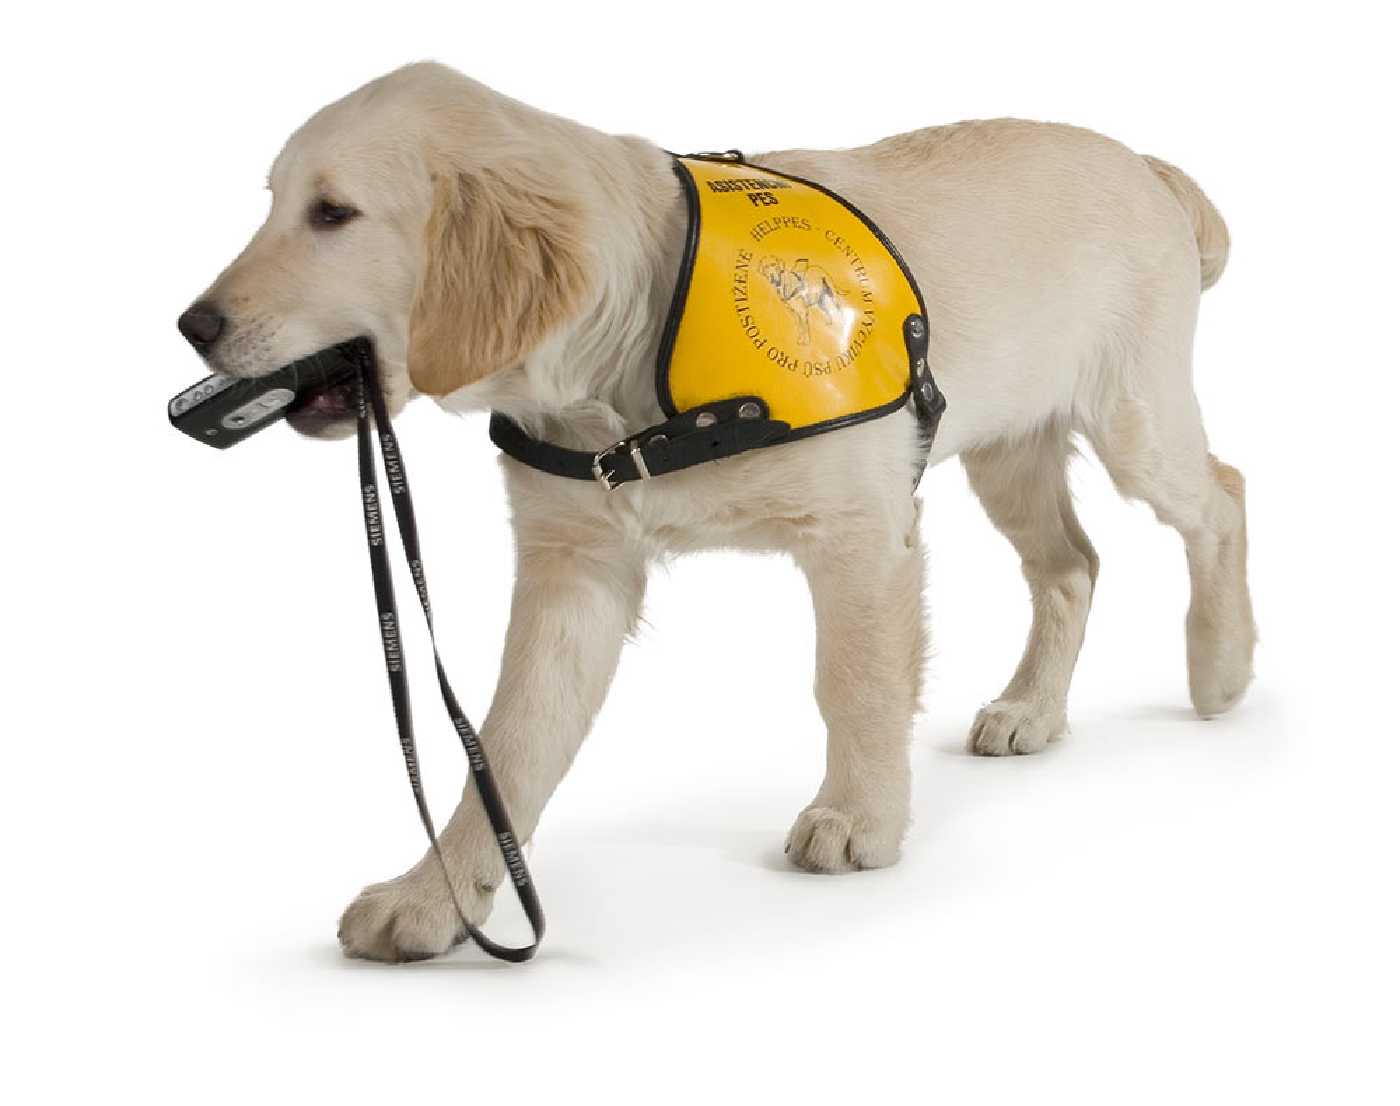 Pes označený jako asistenční podávající tlamou mobil 